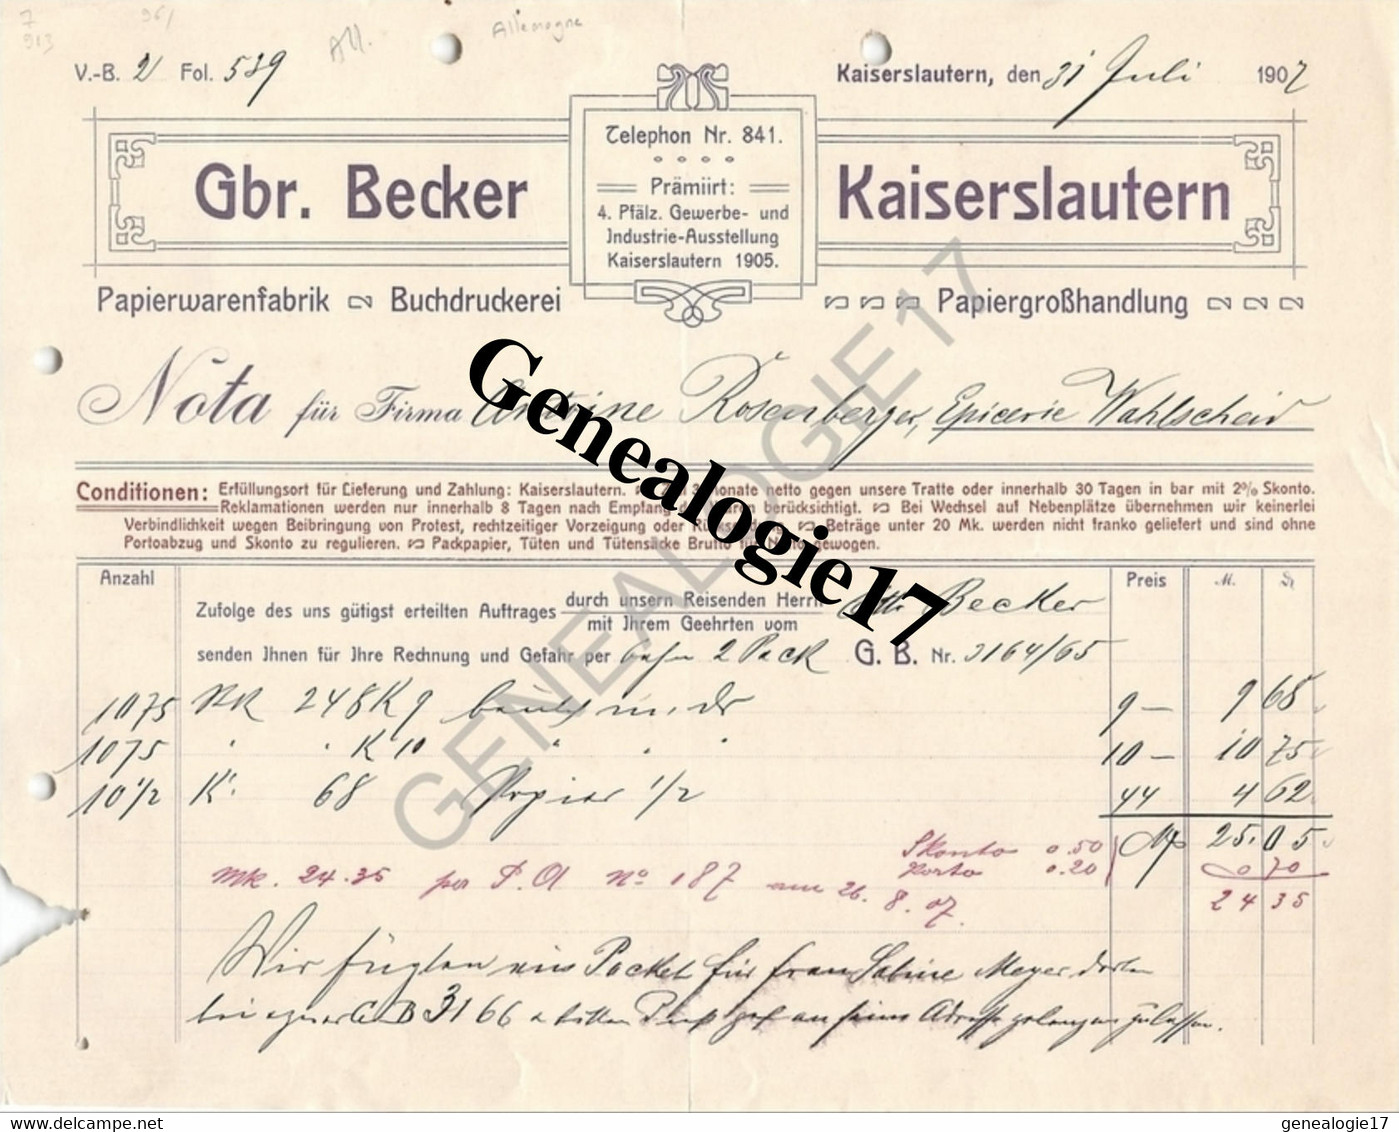 96 0692 ALLEMAGNE KAISERLAUTERN Rhenanie Palatinat 1907 Papier Warenfabrik GBR. BECKER Buchdruckerei - Druck & Papierwaren